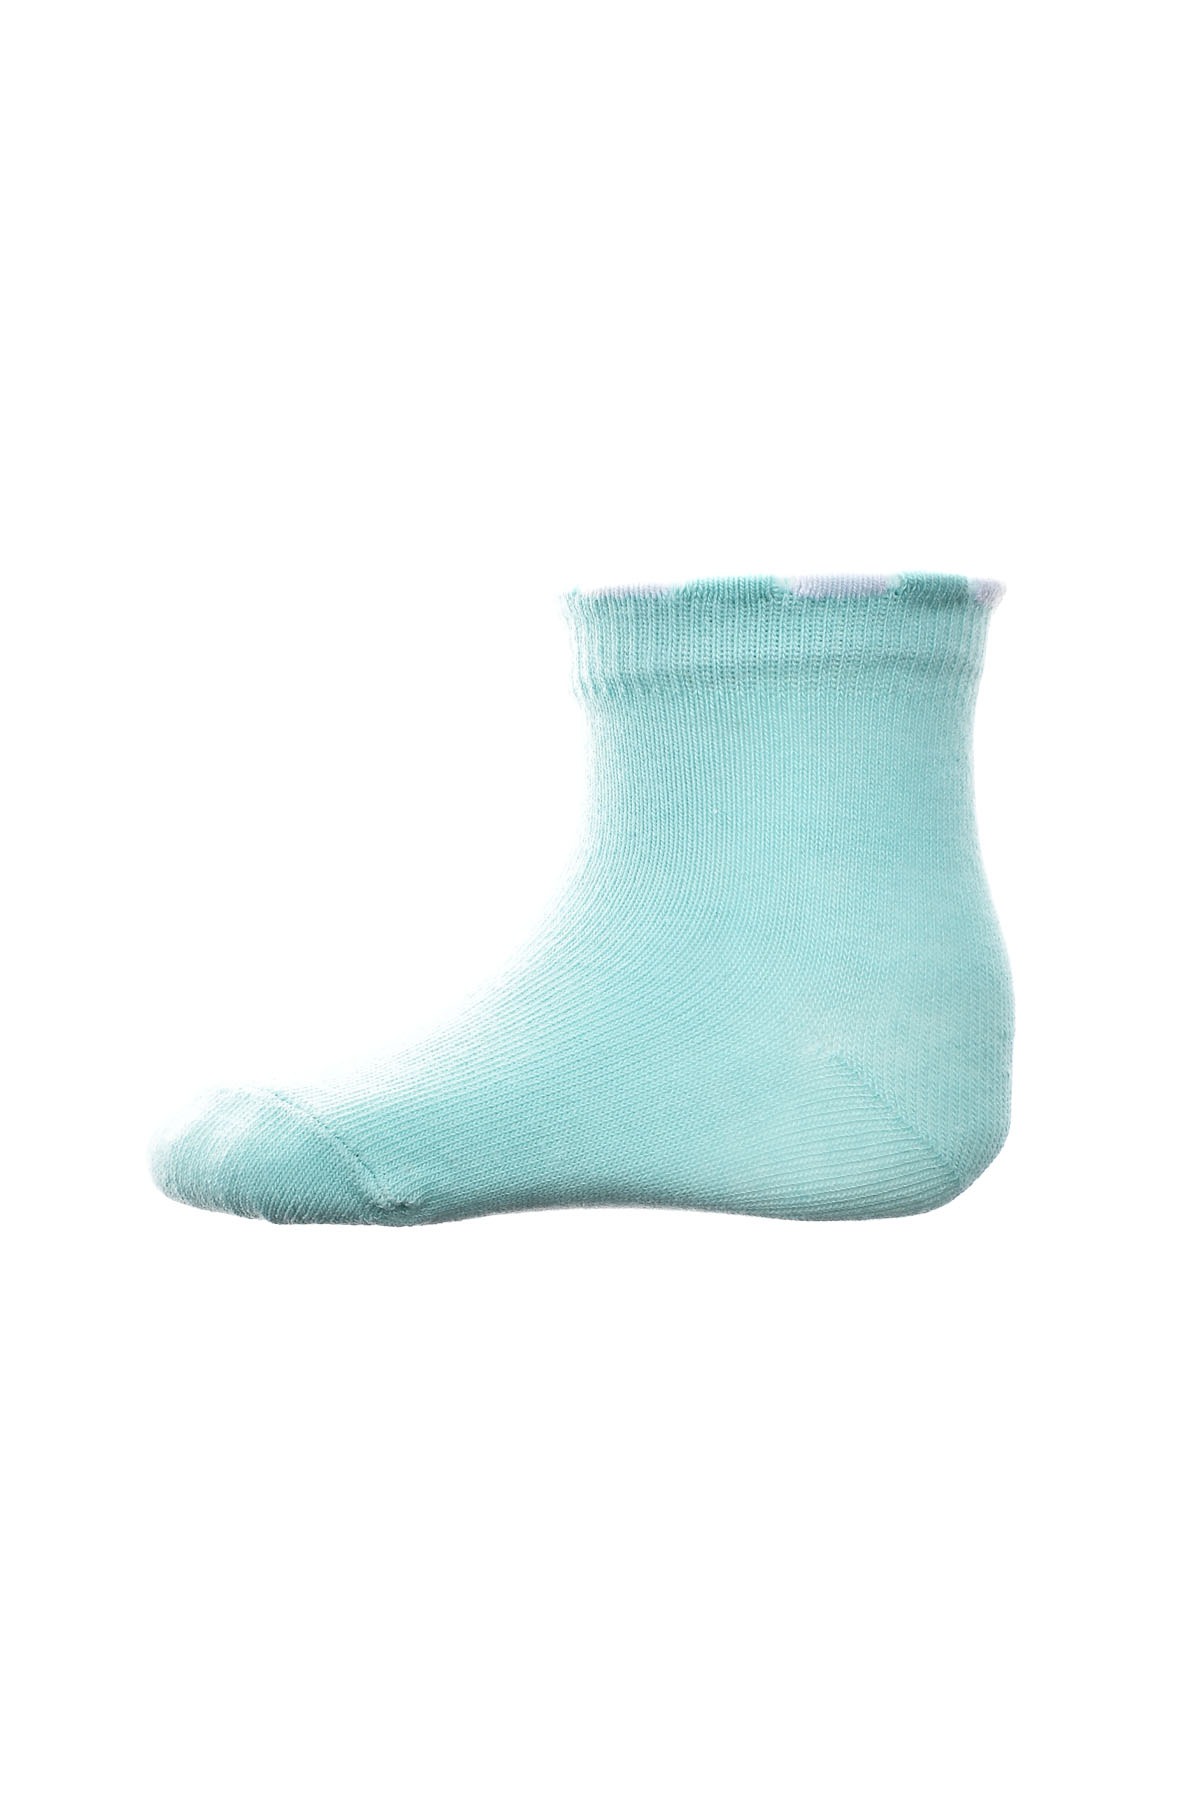 Βρεφικές κάλτσες - BebeLino - 0